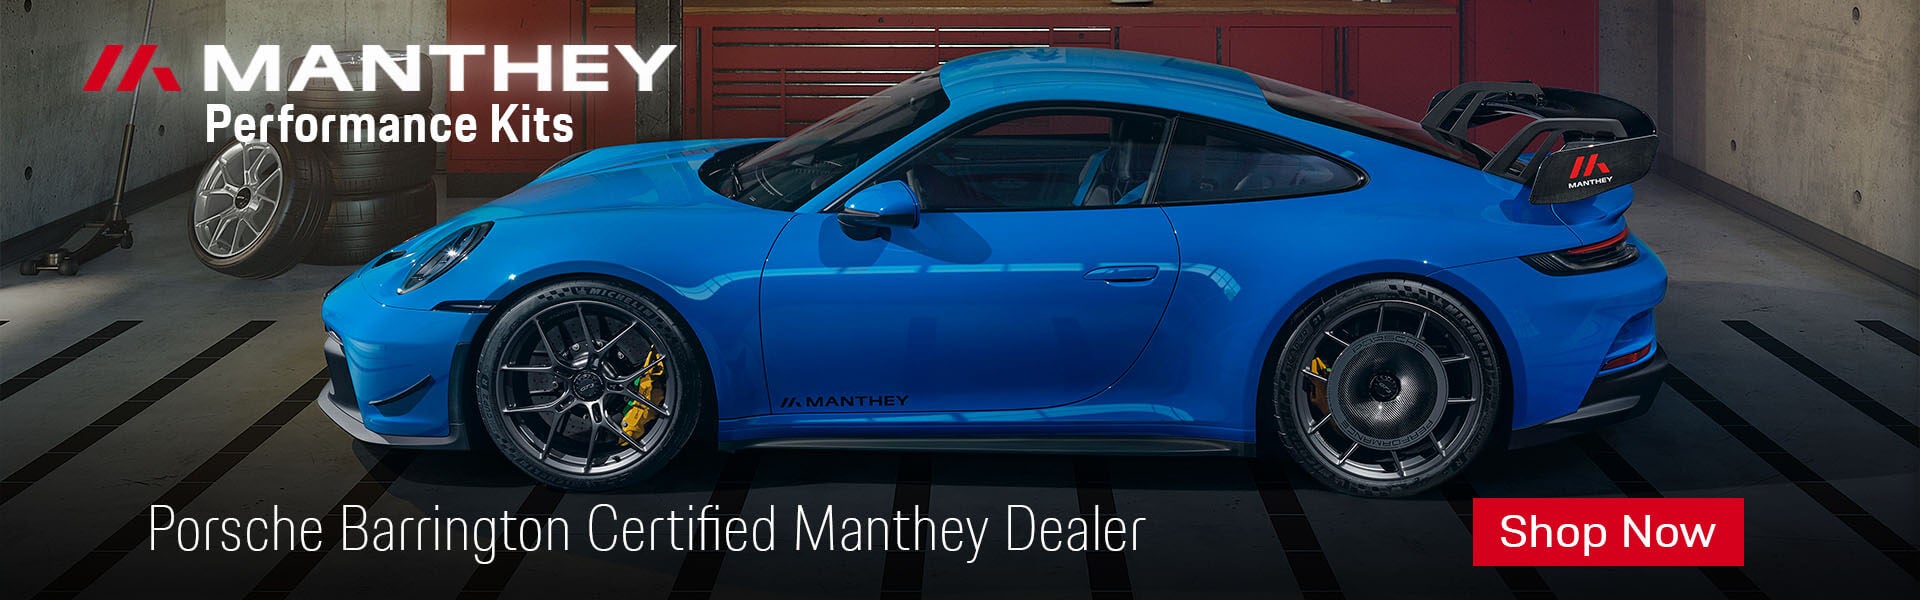 Porsche Barrington Certified Manthey Dealer